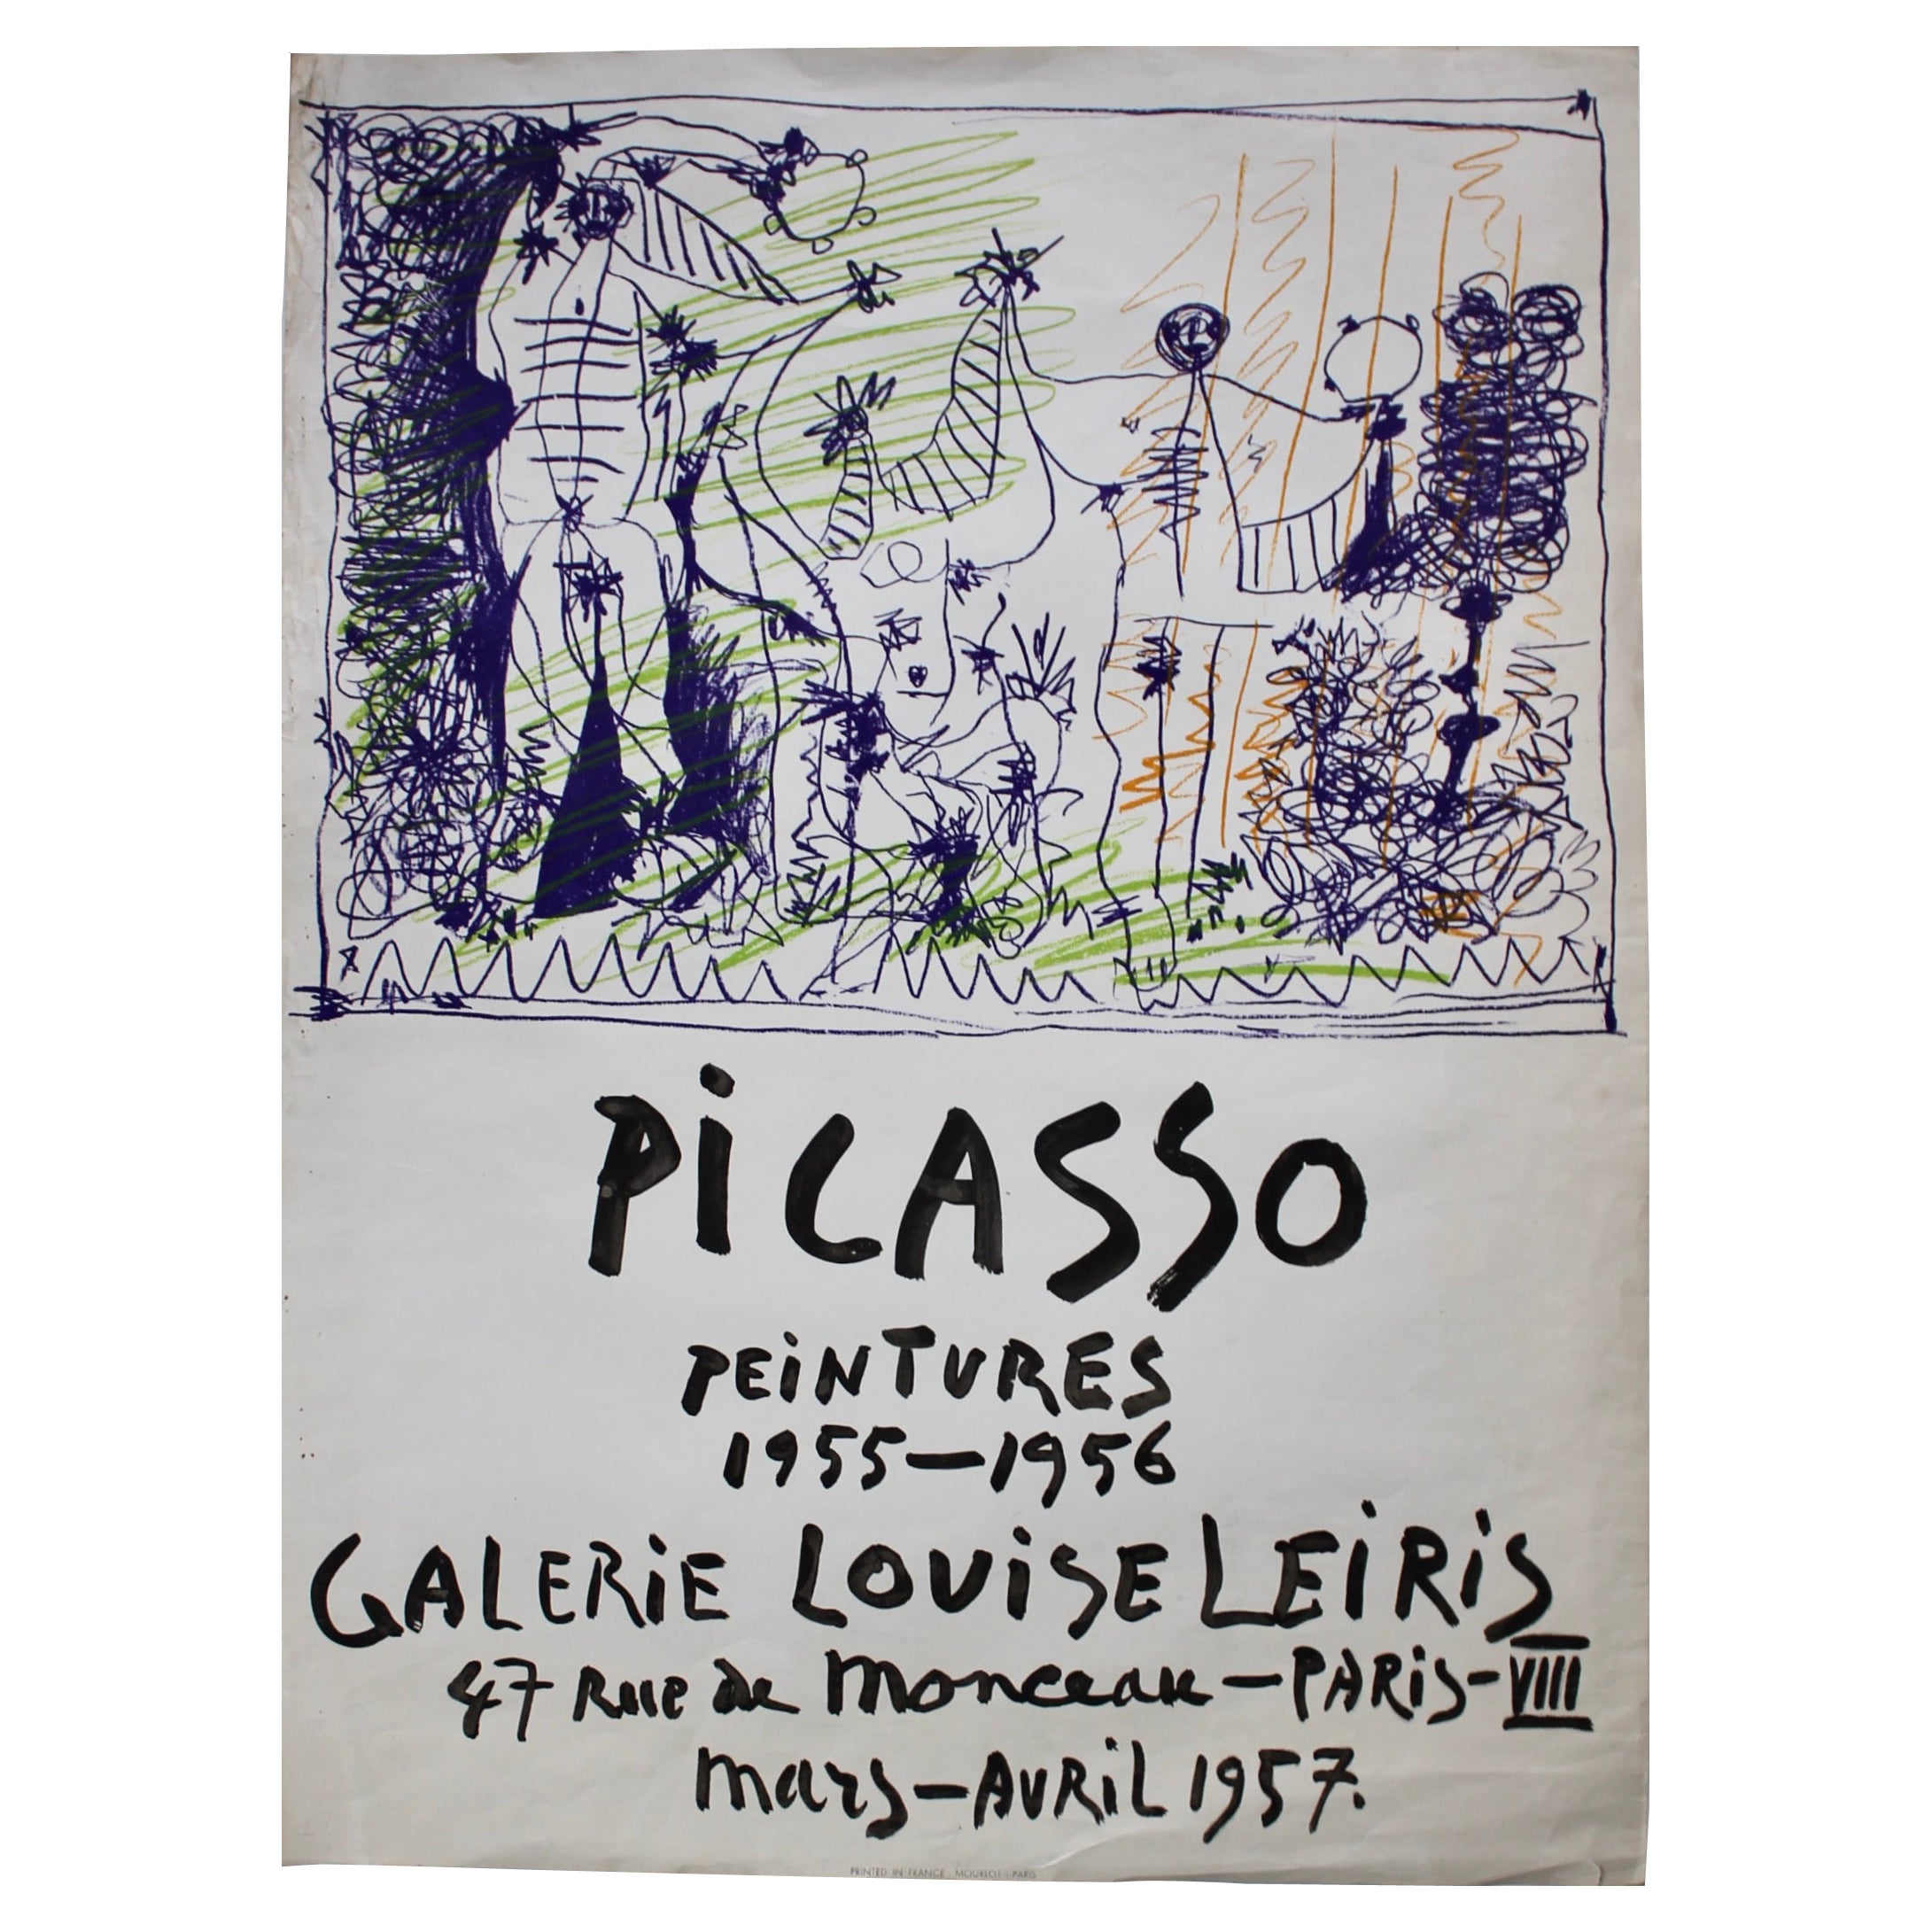 Originalplakat von Pablo Picasso, 1957, Galerie Louise Leiris